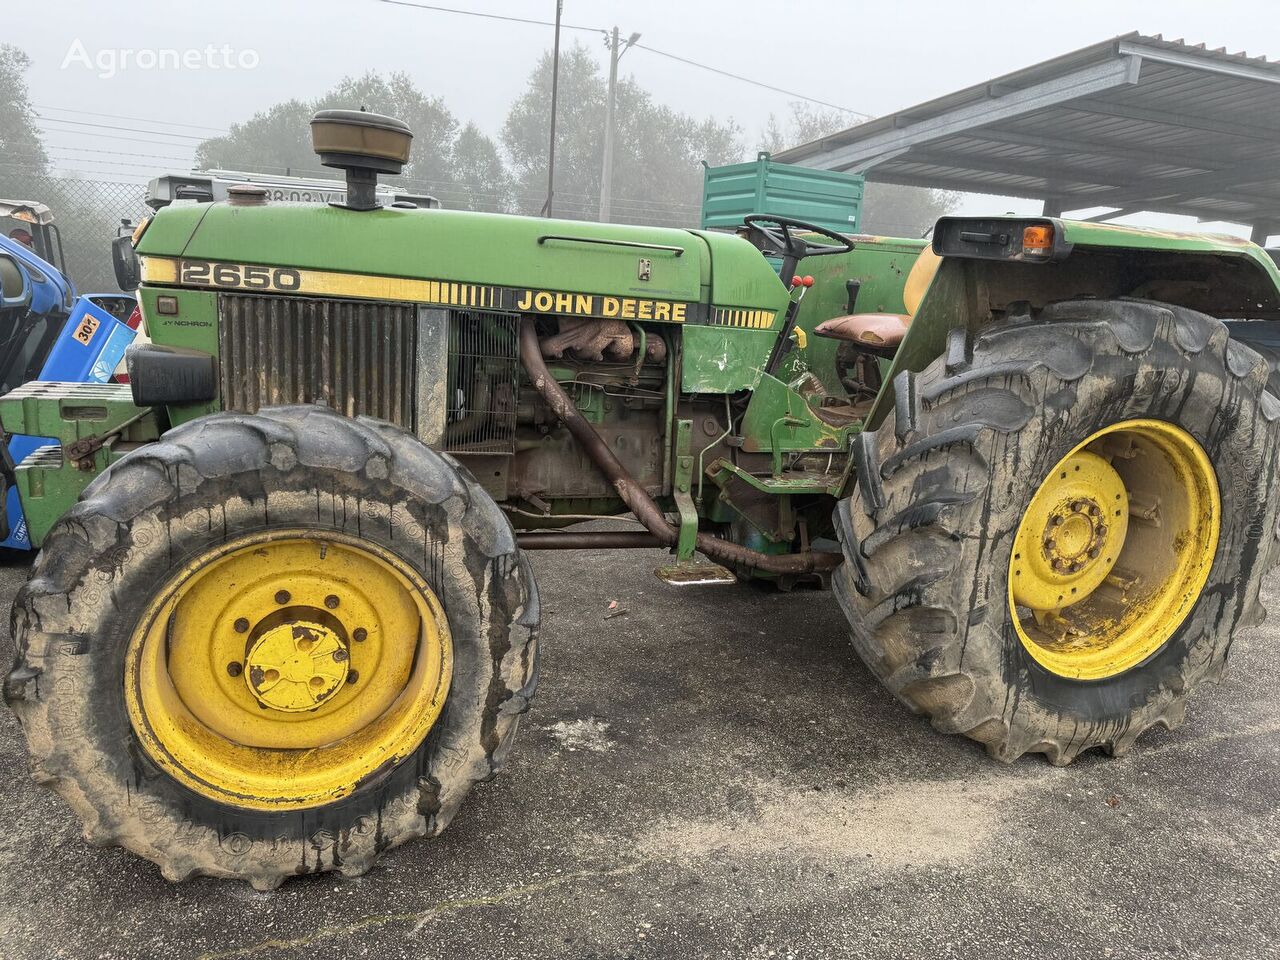 John Deere 2650 wheel tractor